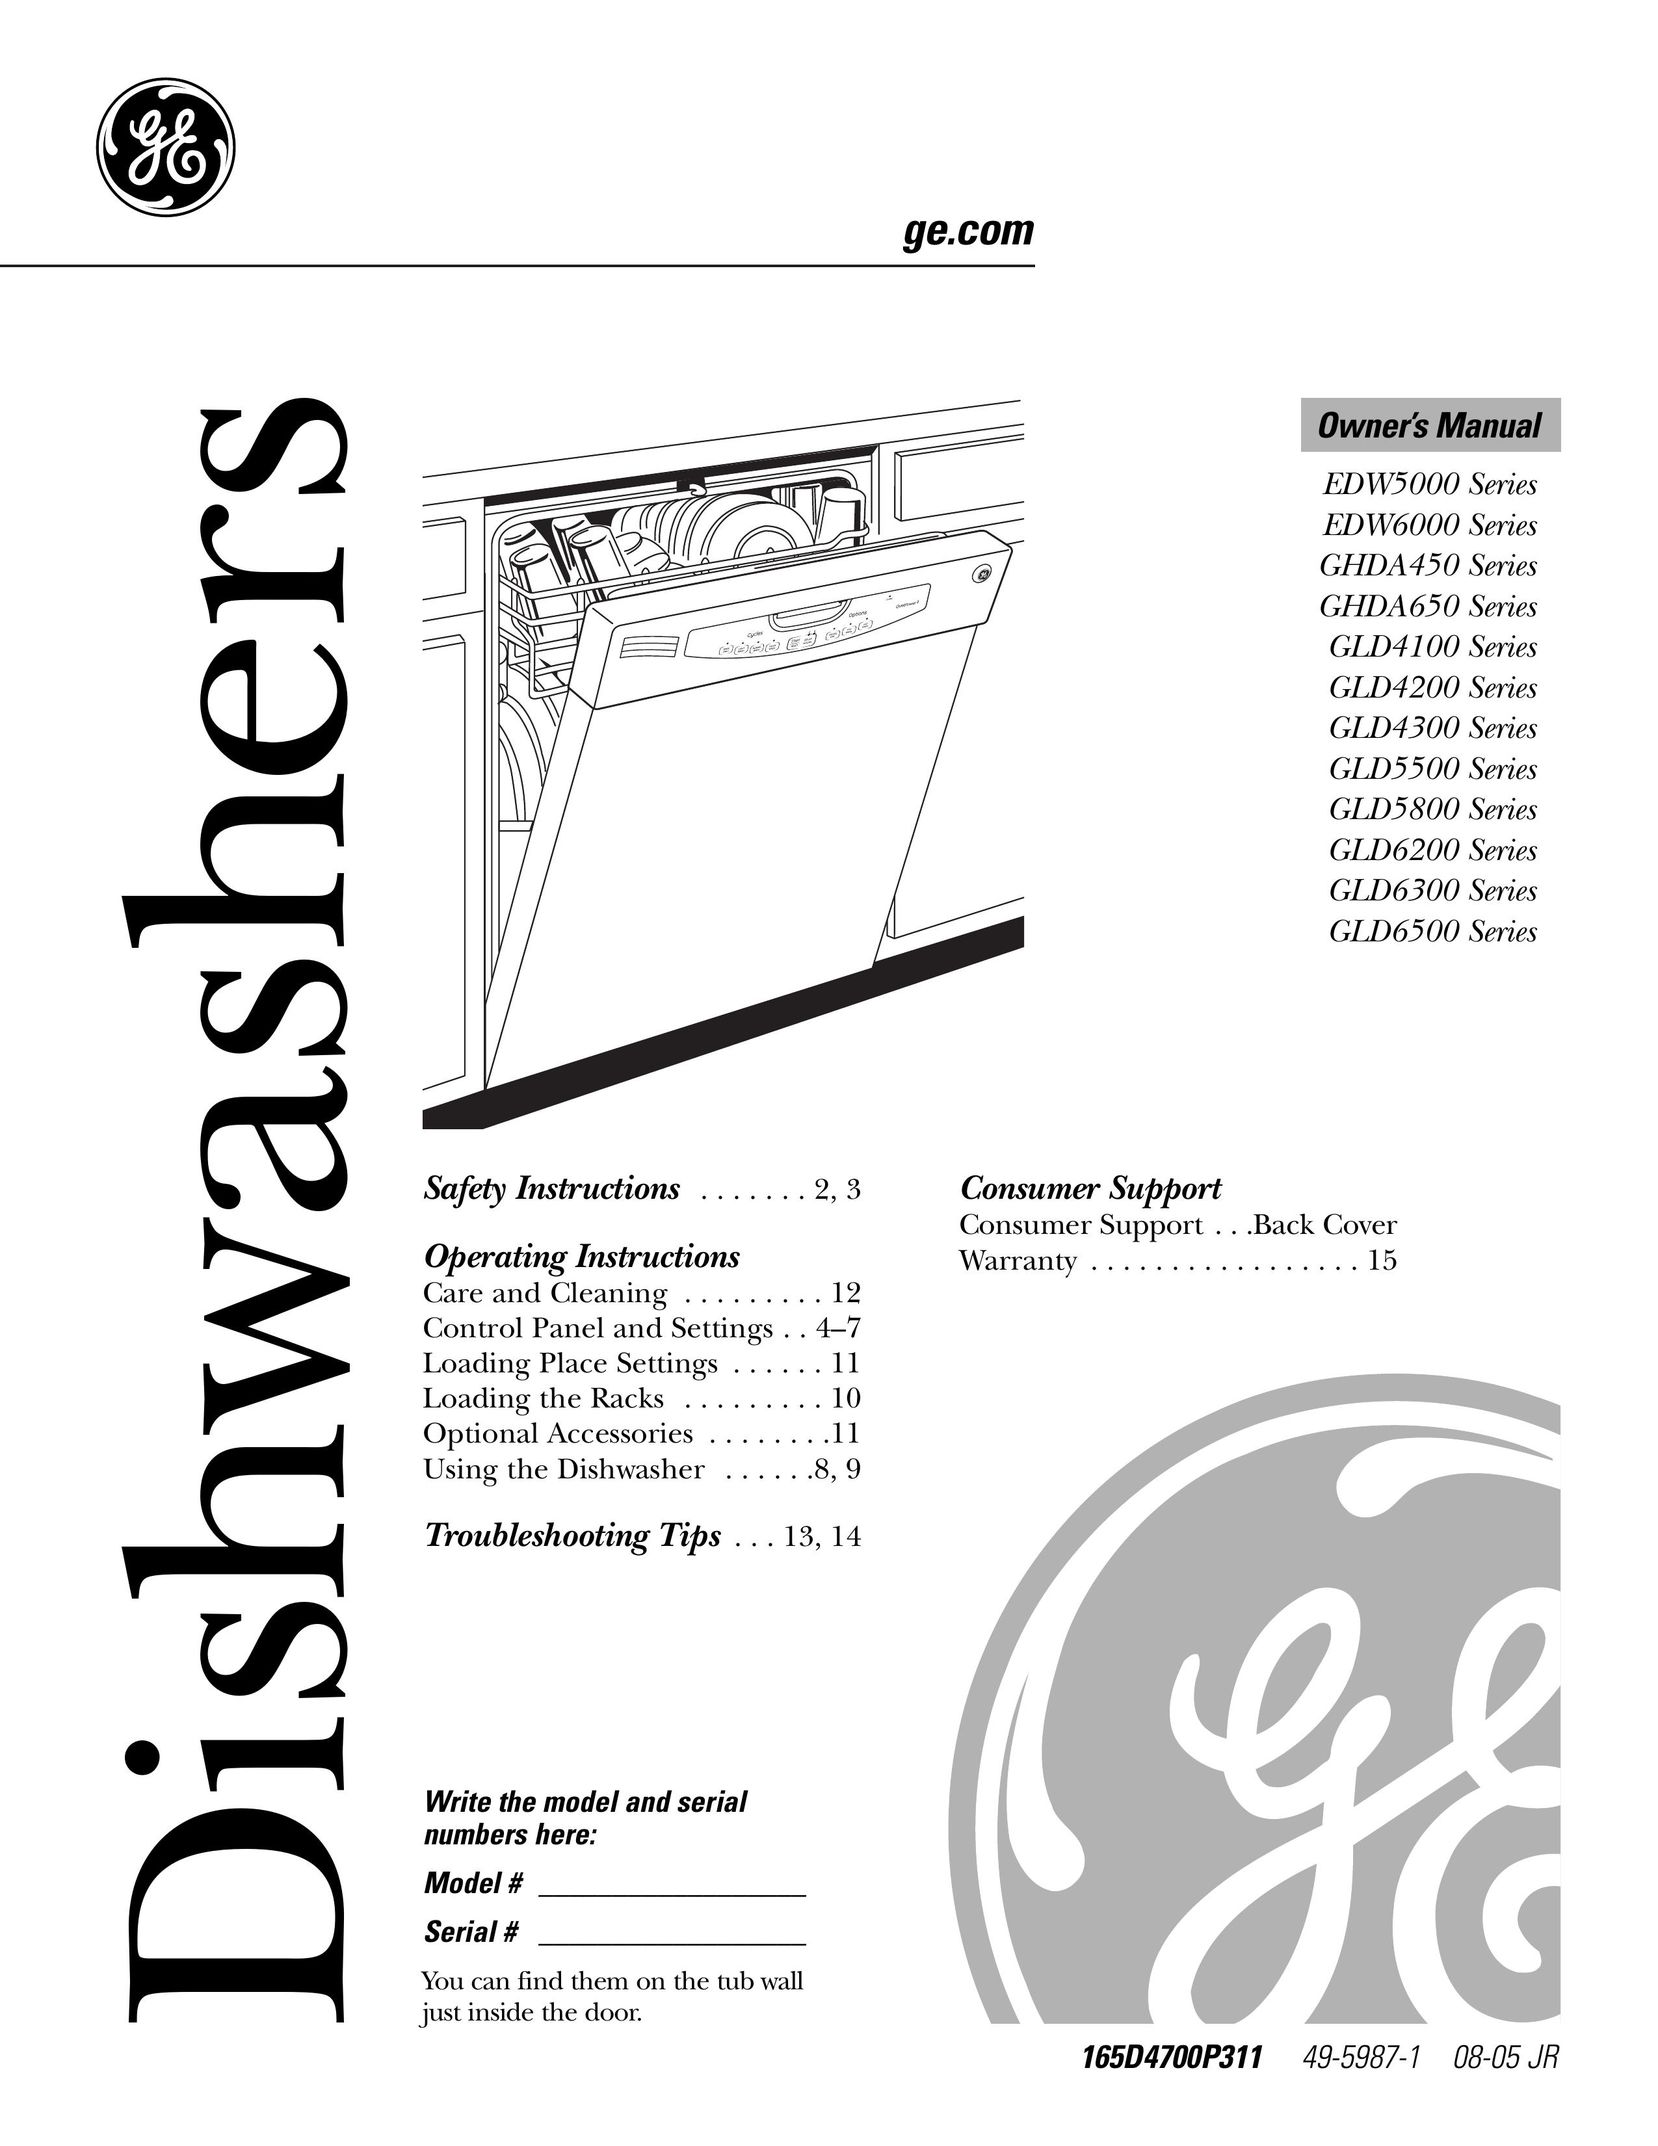 GE Monogram GLD5500 Dishwasher User Manual